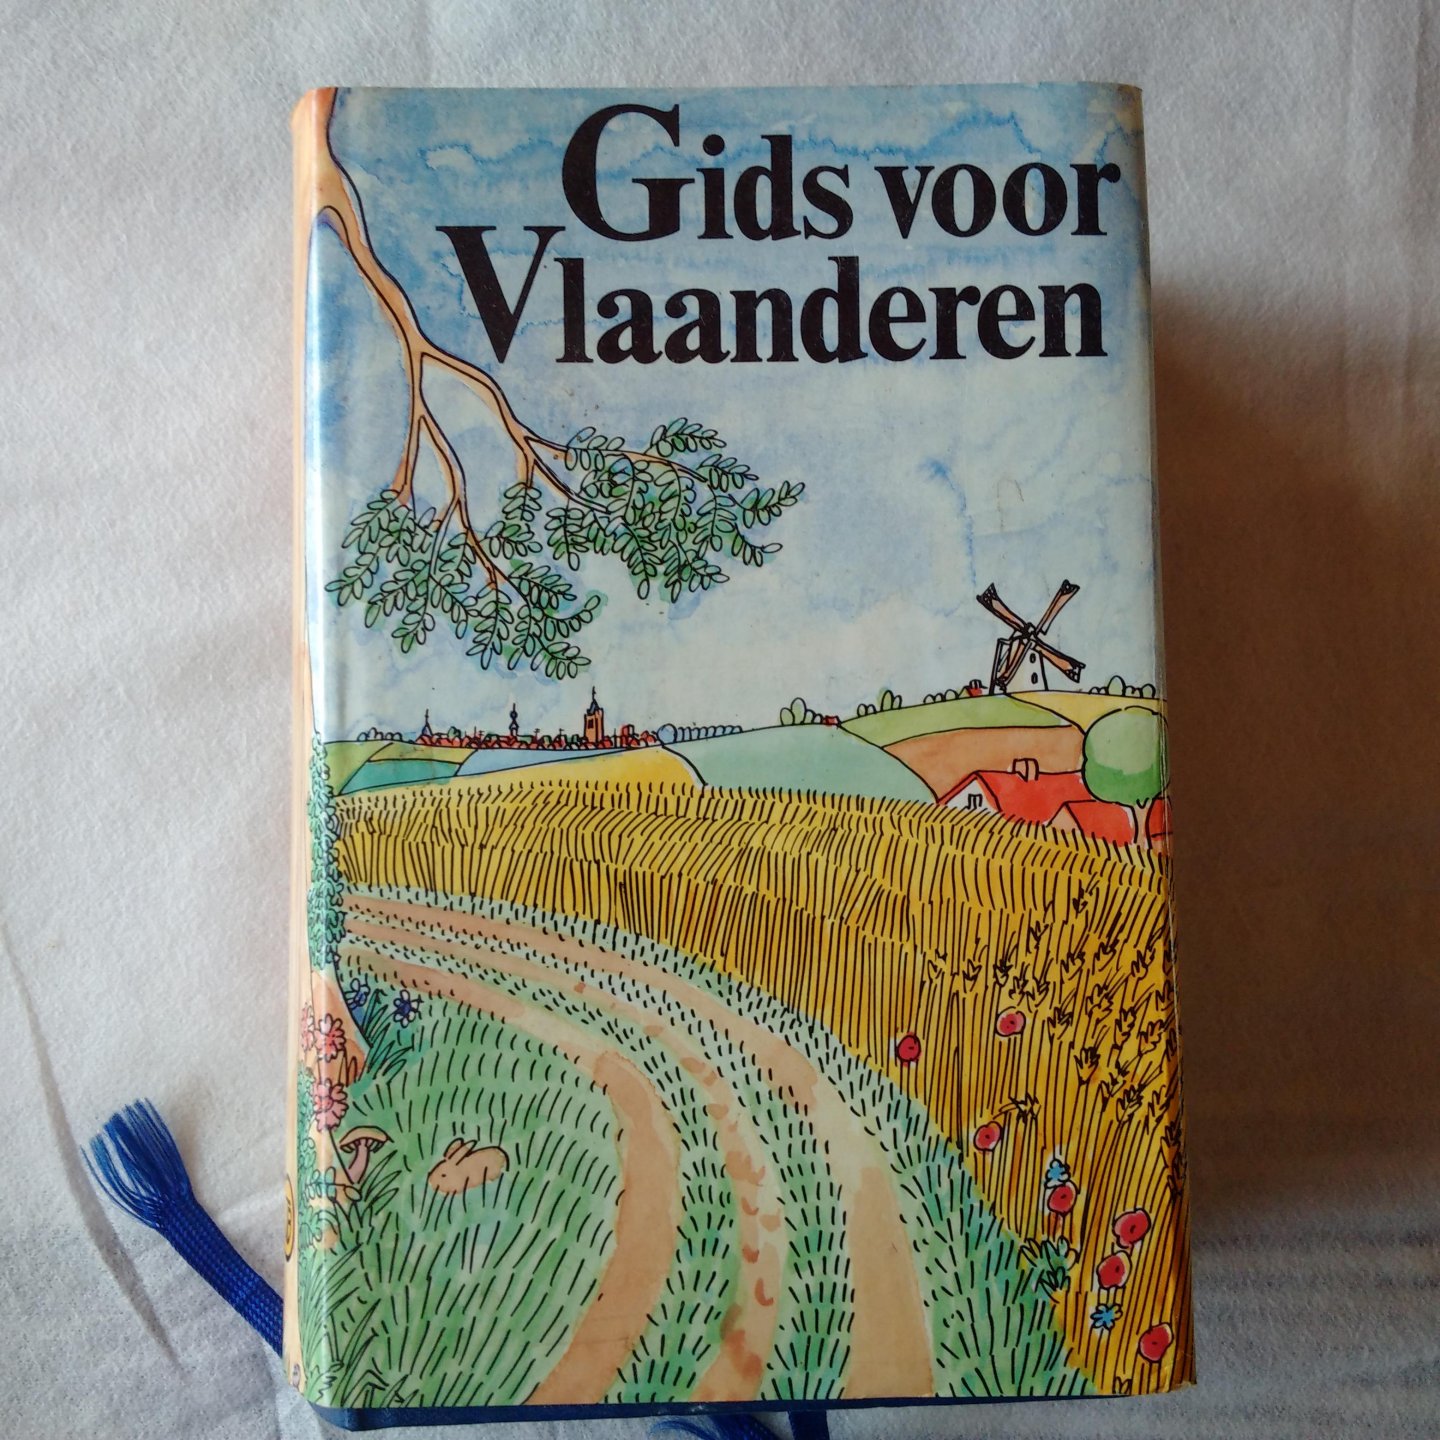 Overstraeten, Jozef van - Gids voor Vlaanderen